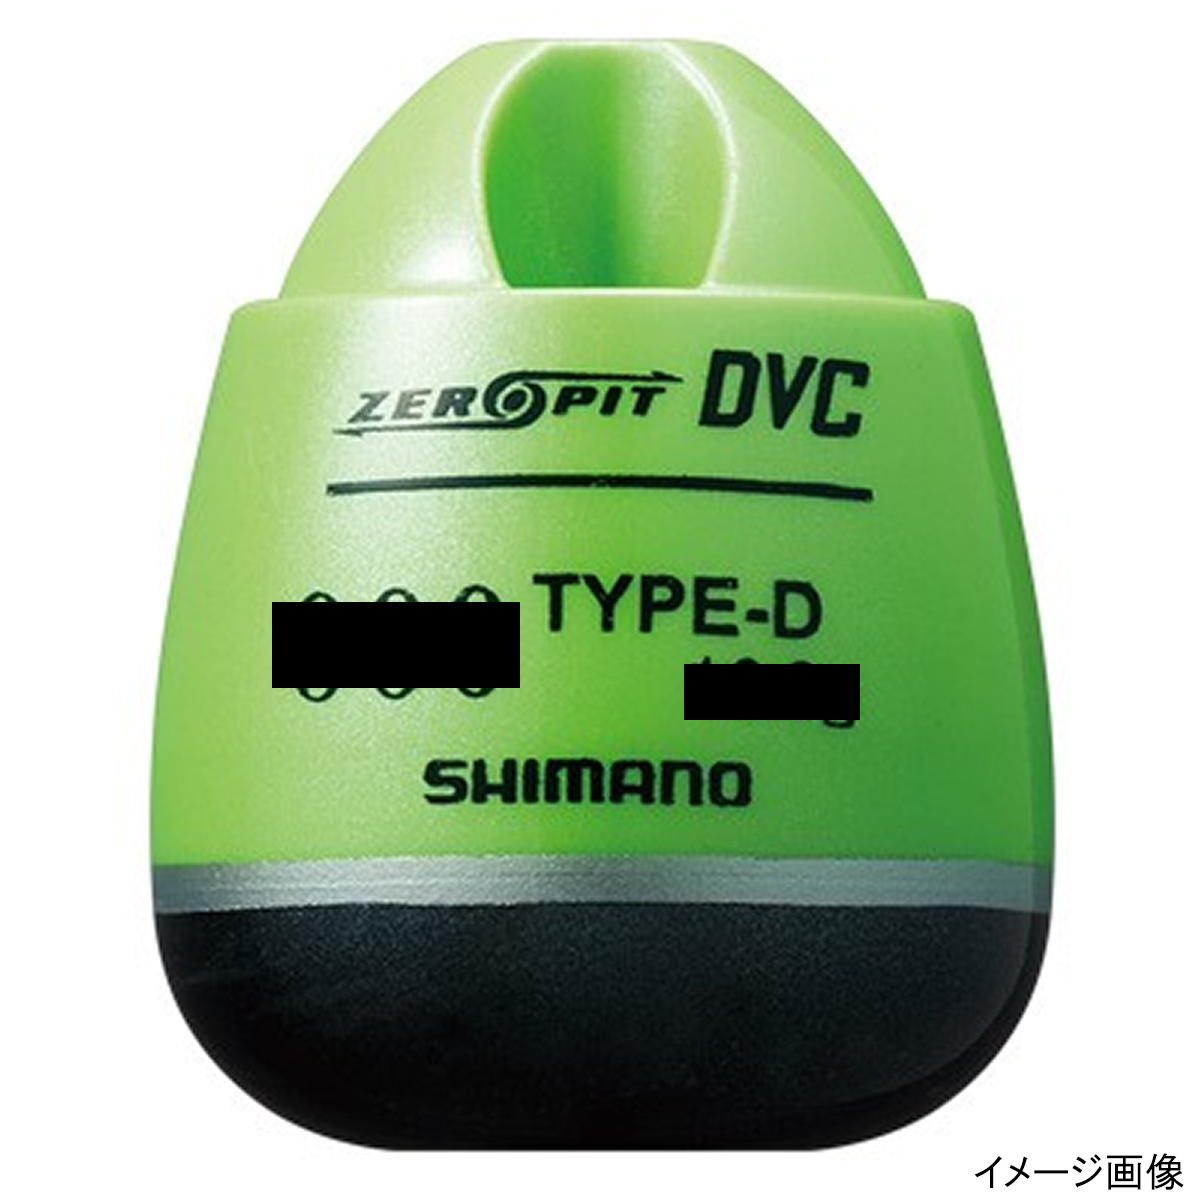 シマノ CORE ZERO-PIT DVC TYPE-D FL-49BR 000 マスカット